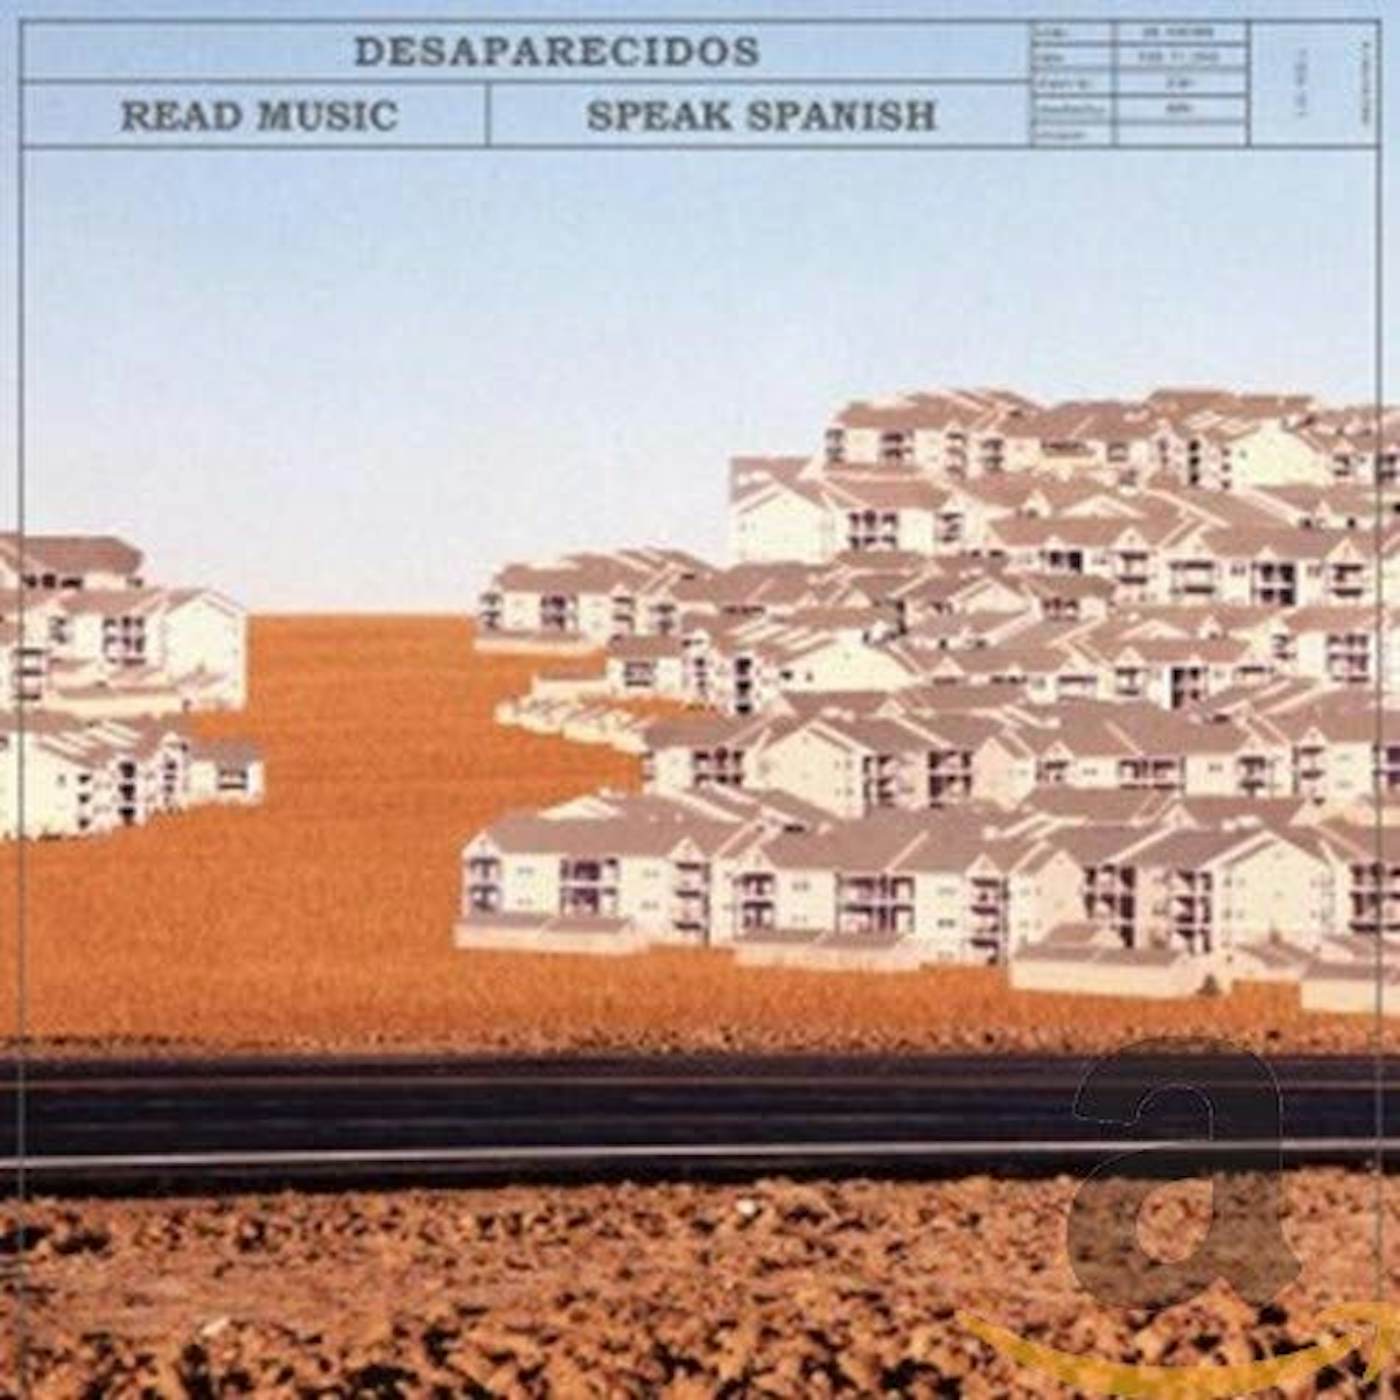 Desaparecidos Read Music/Speak Spanish Vinyl Record